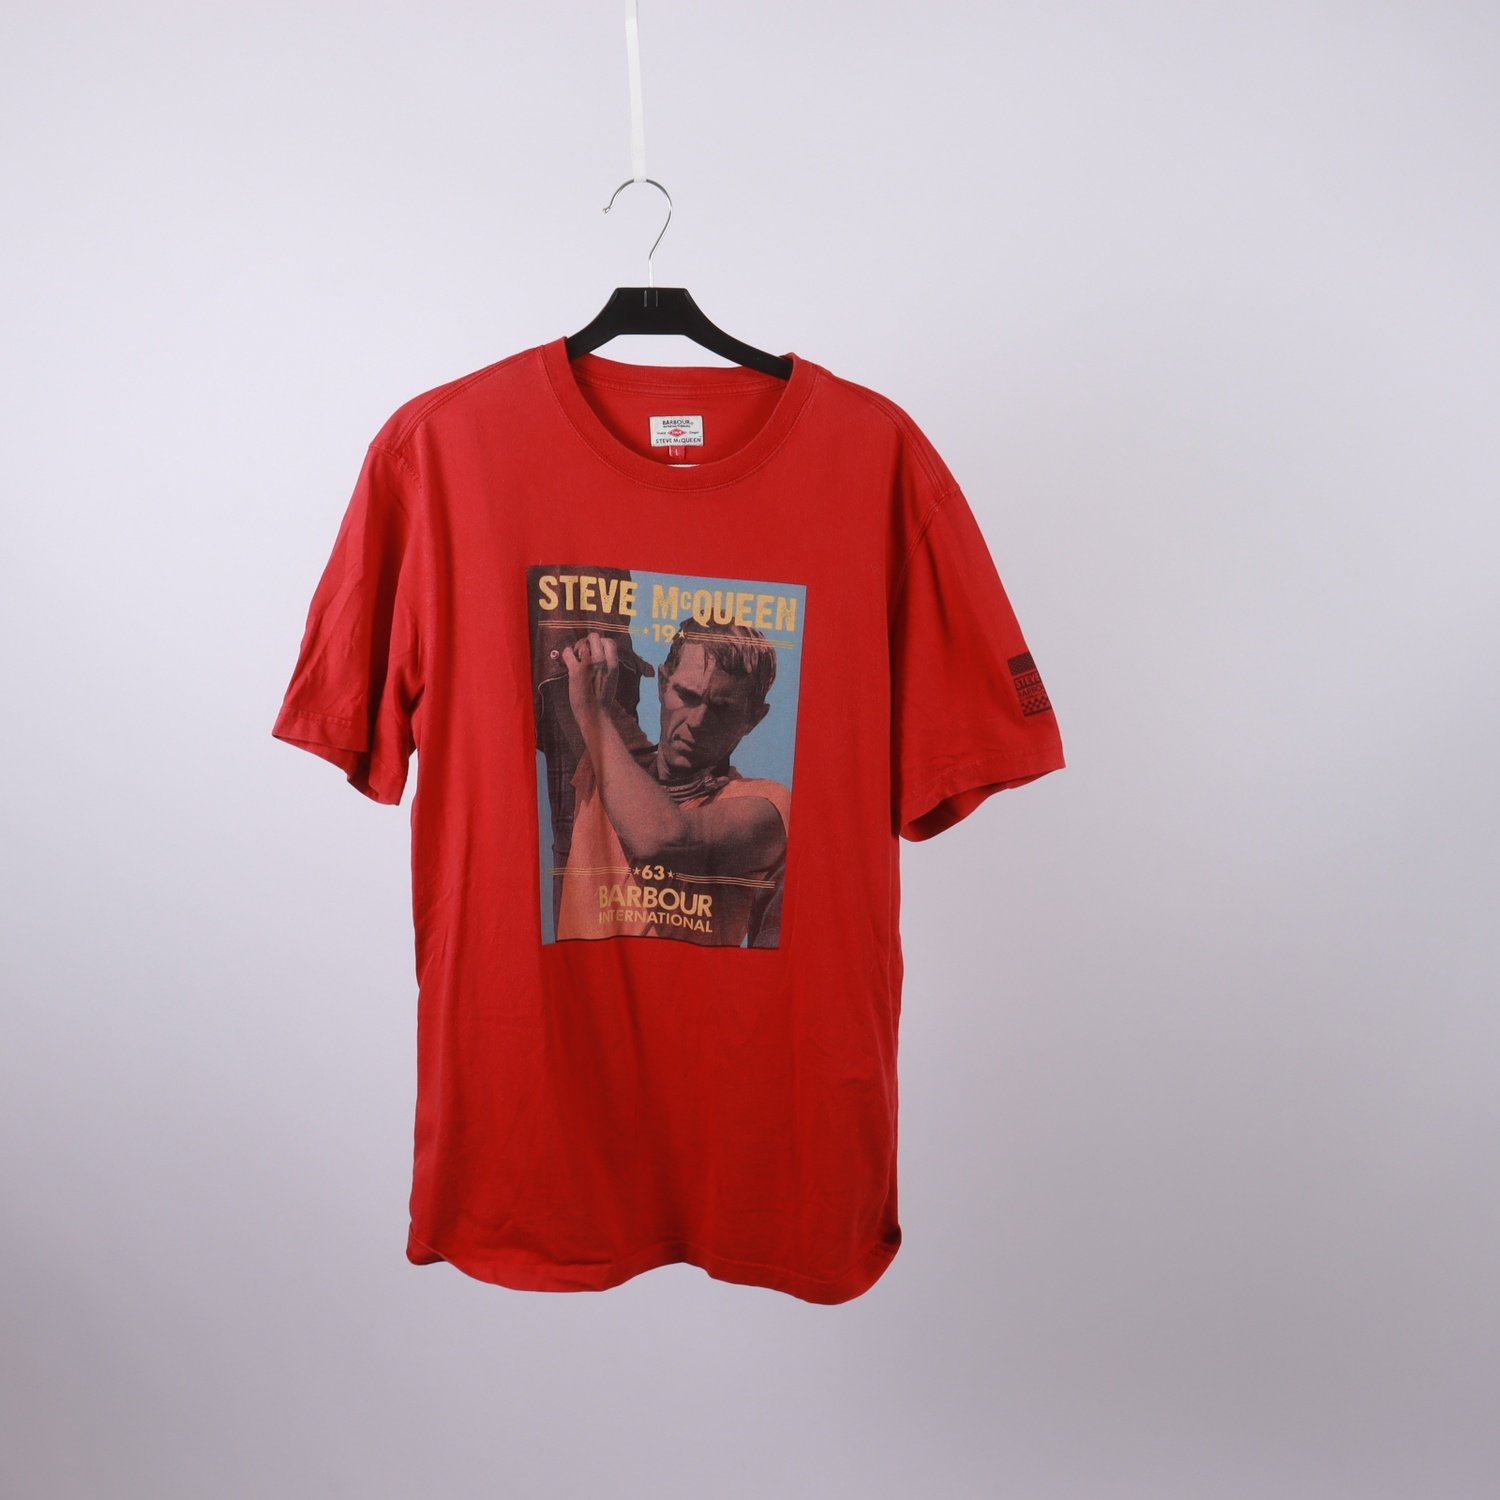 T-shirt, Barbour, Steve McQueen, röd, stl. L